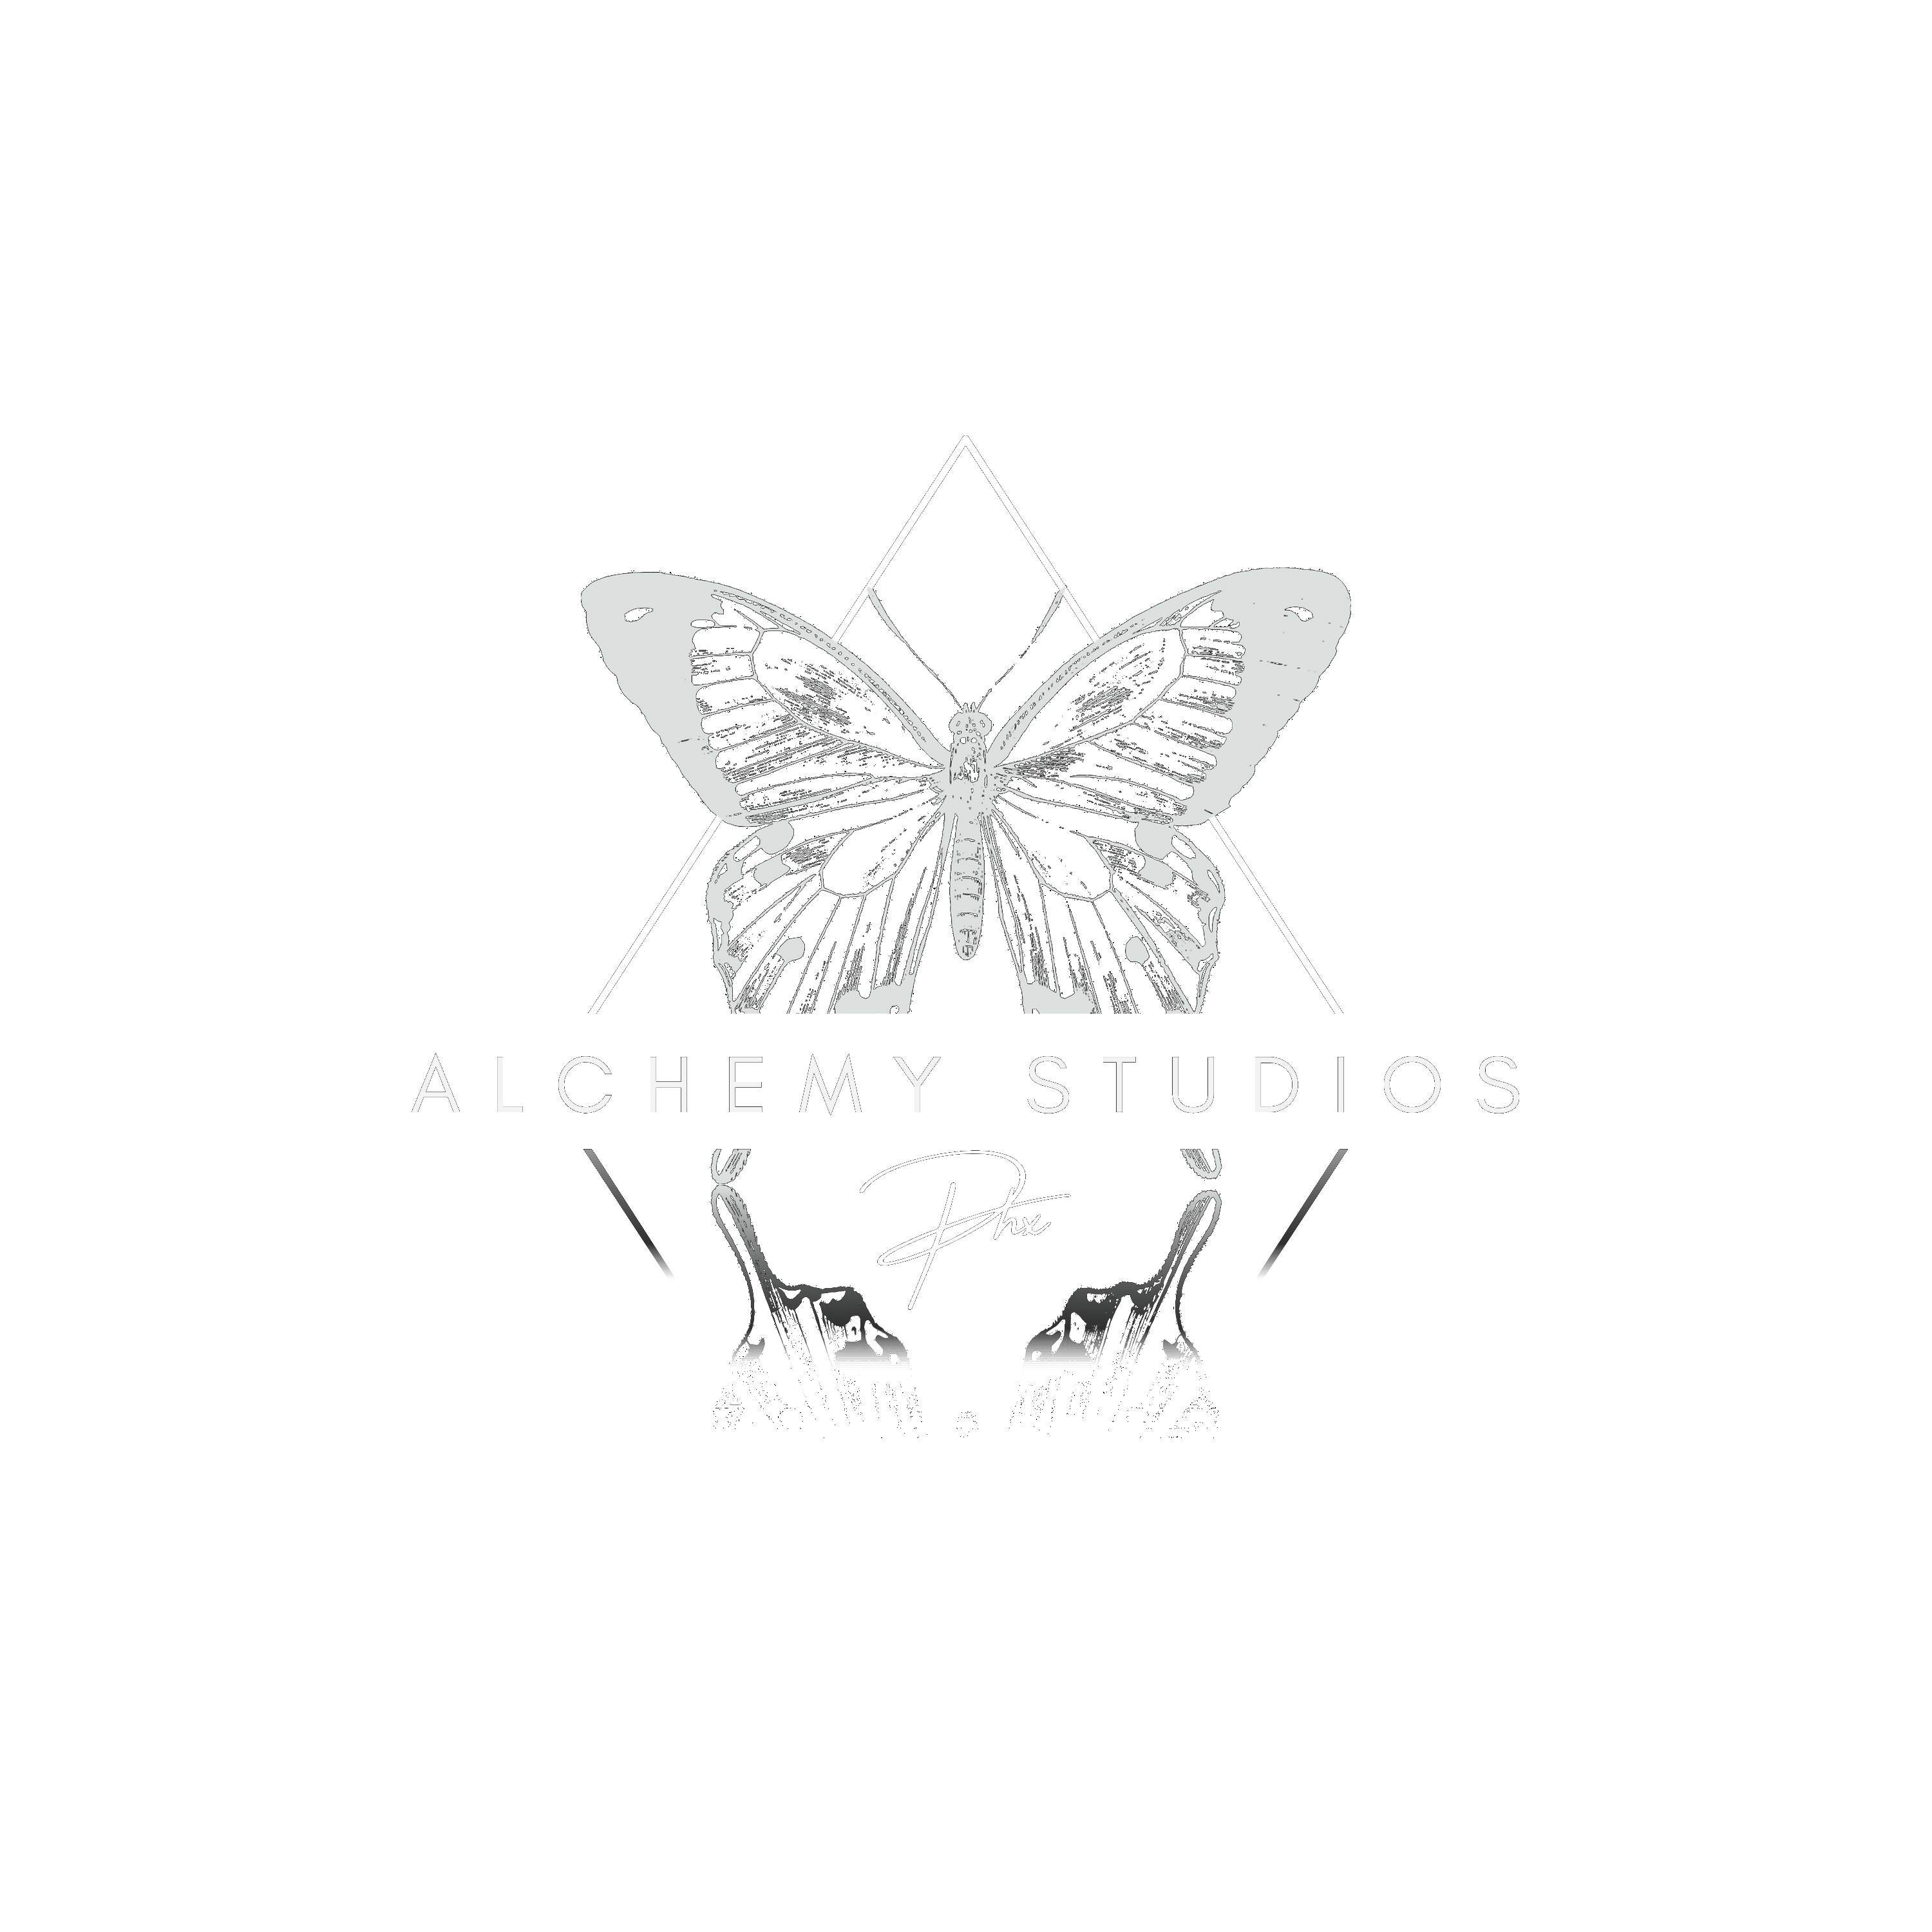 Alchemy Studios Phx